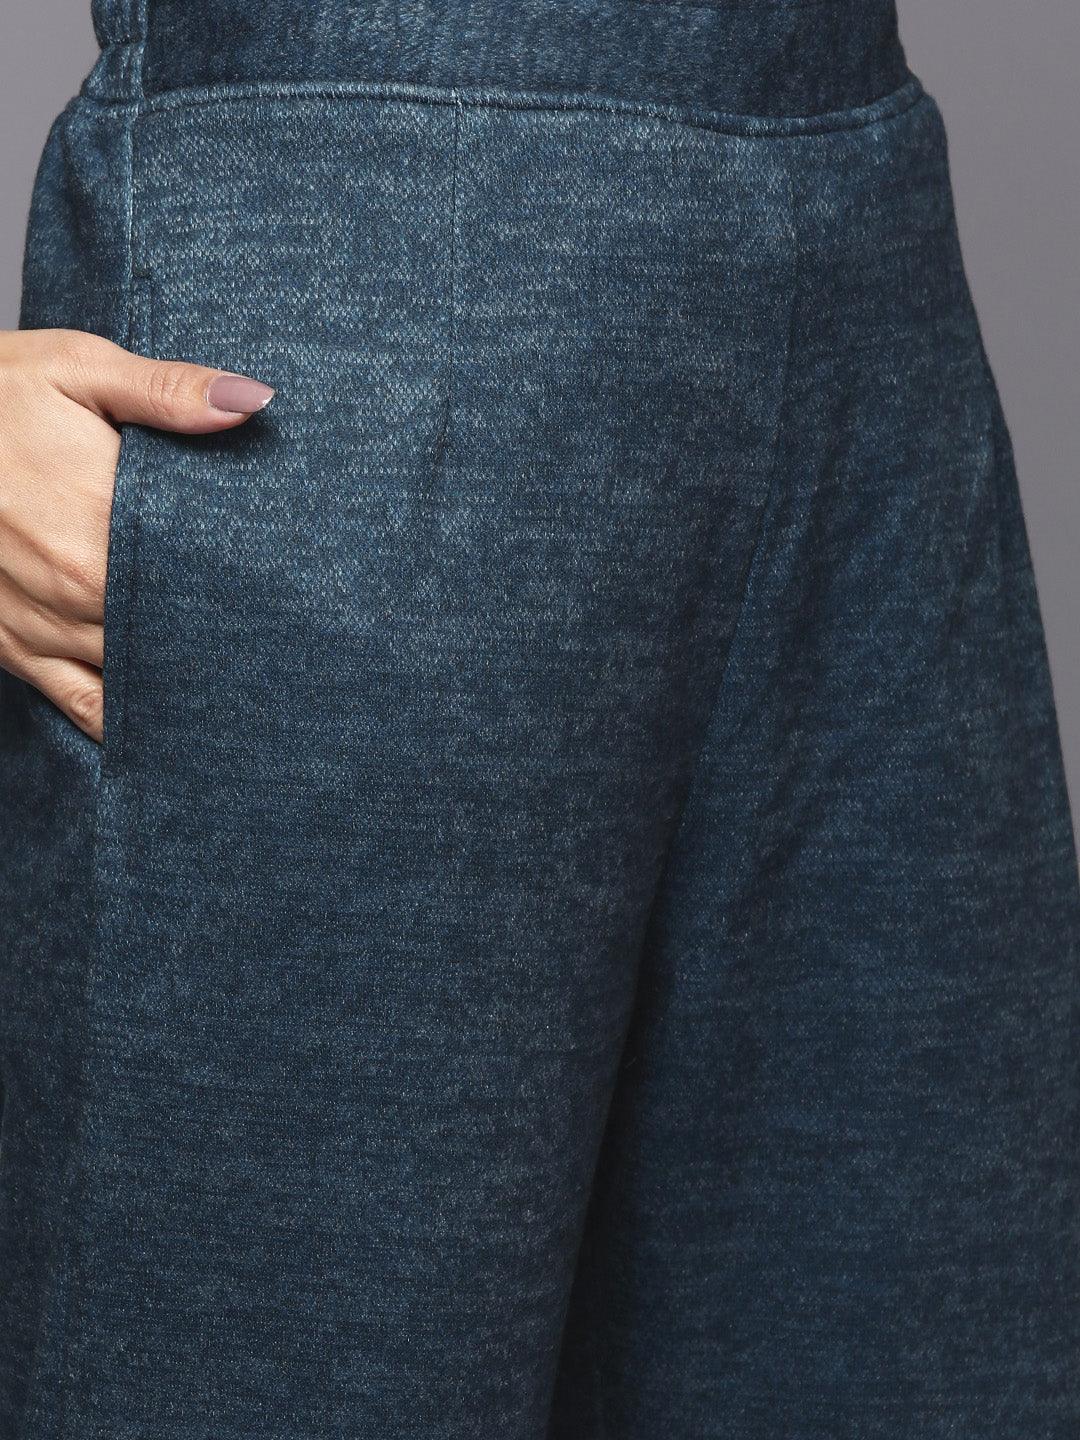 Blue Printed Wool Straight Suit Set - Libas